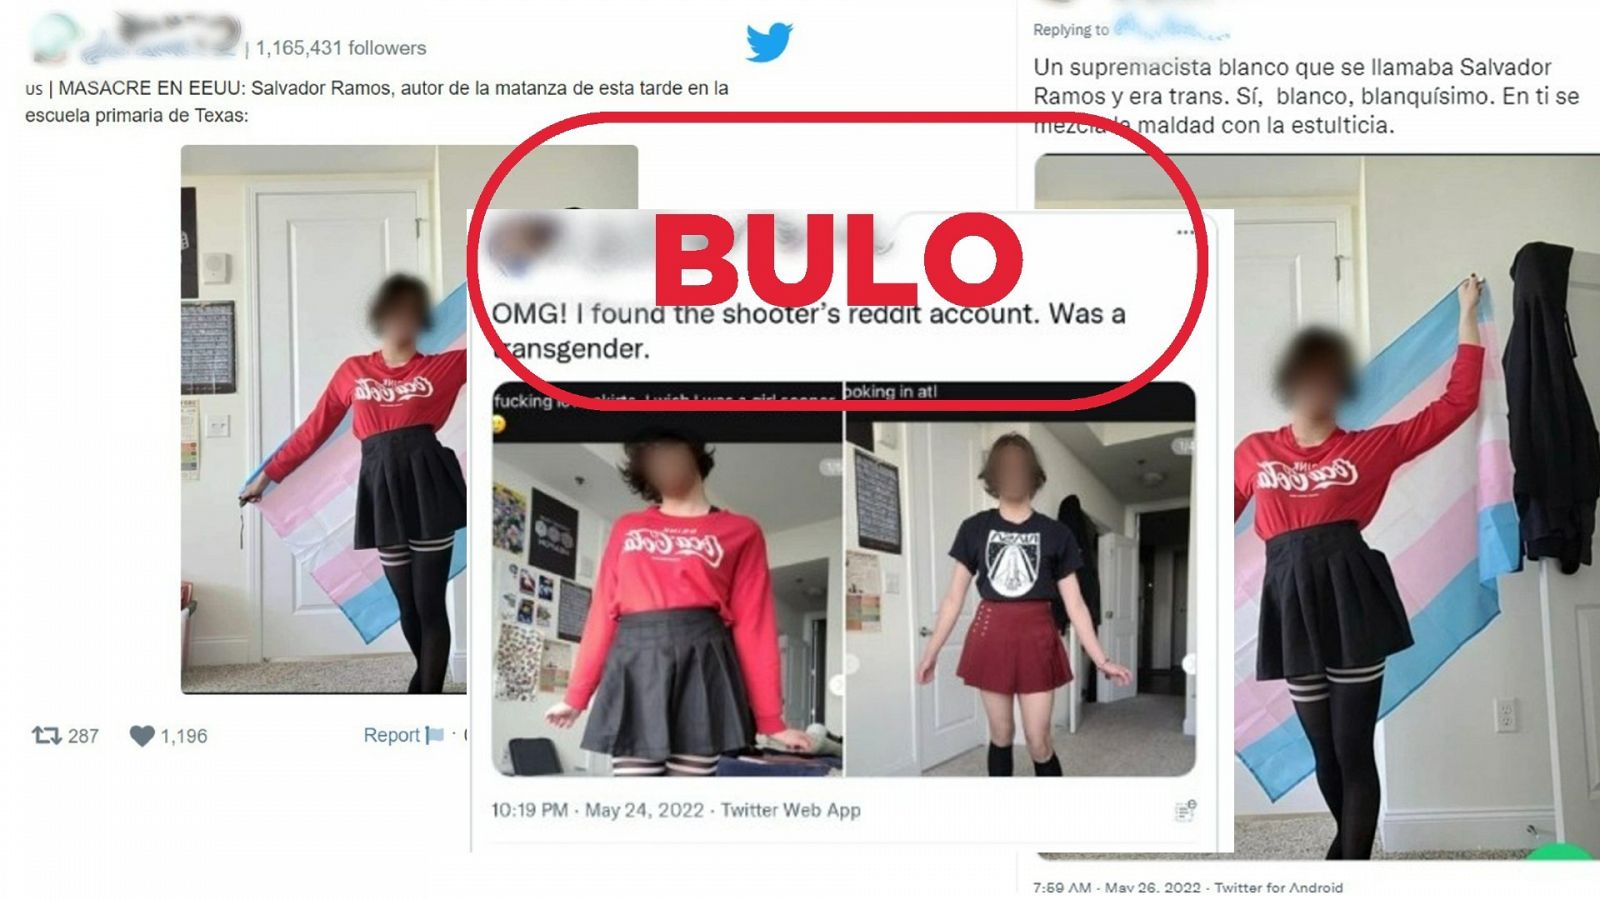 Mensajes de Twitter que difunden fotos de una persona trans identificándola como el autor del tiroteo en una escuela de Texas, con el sello bulo en rojo de VerificaRTVE